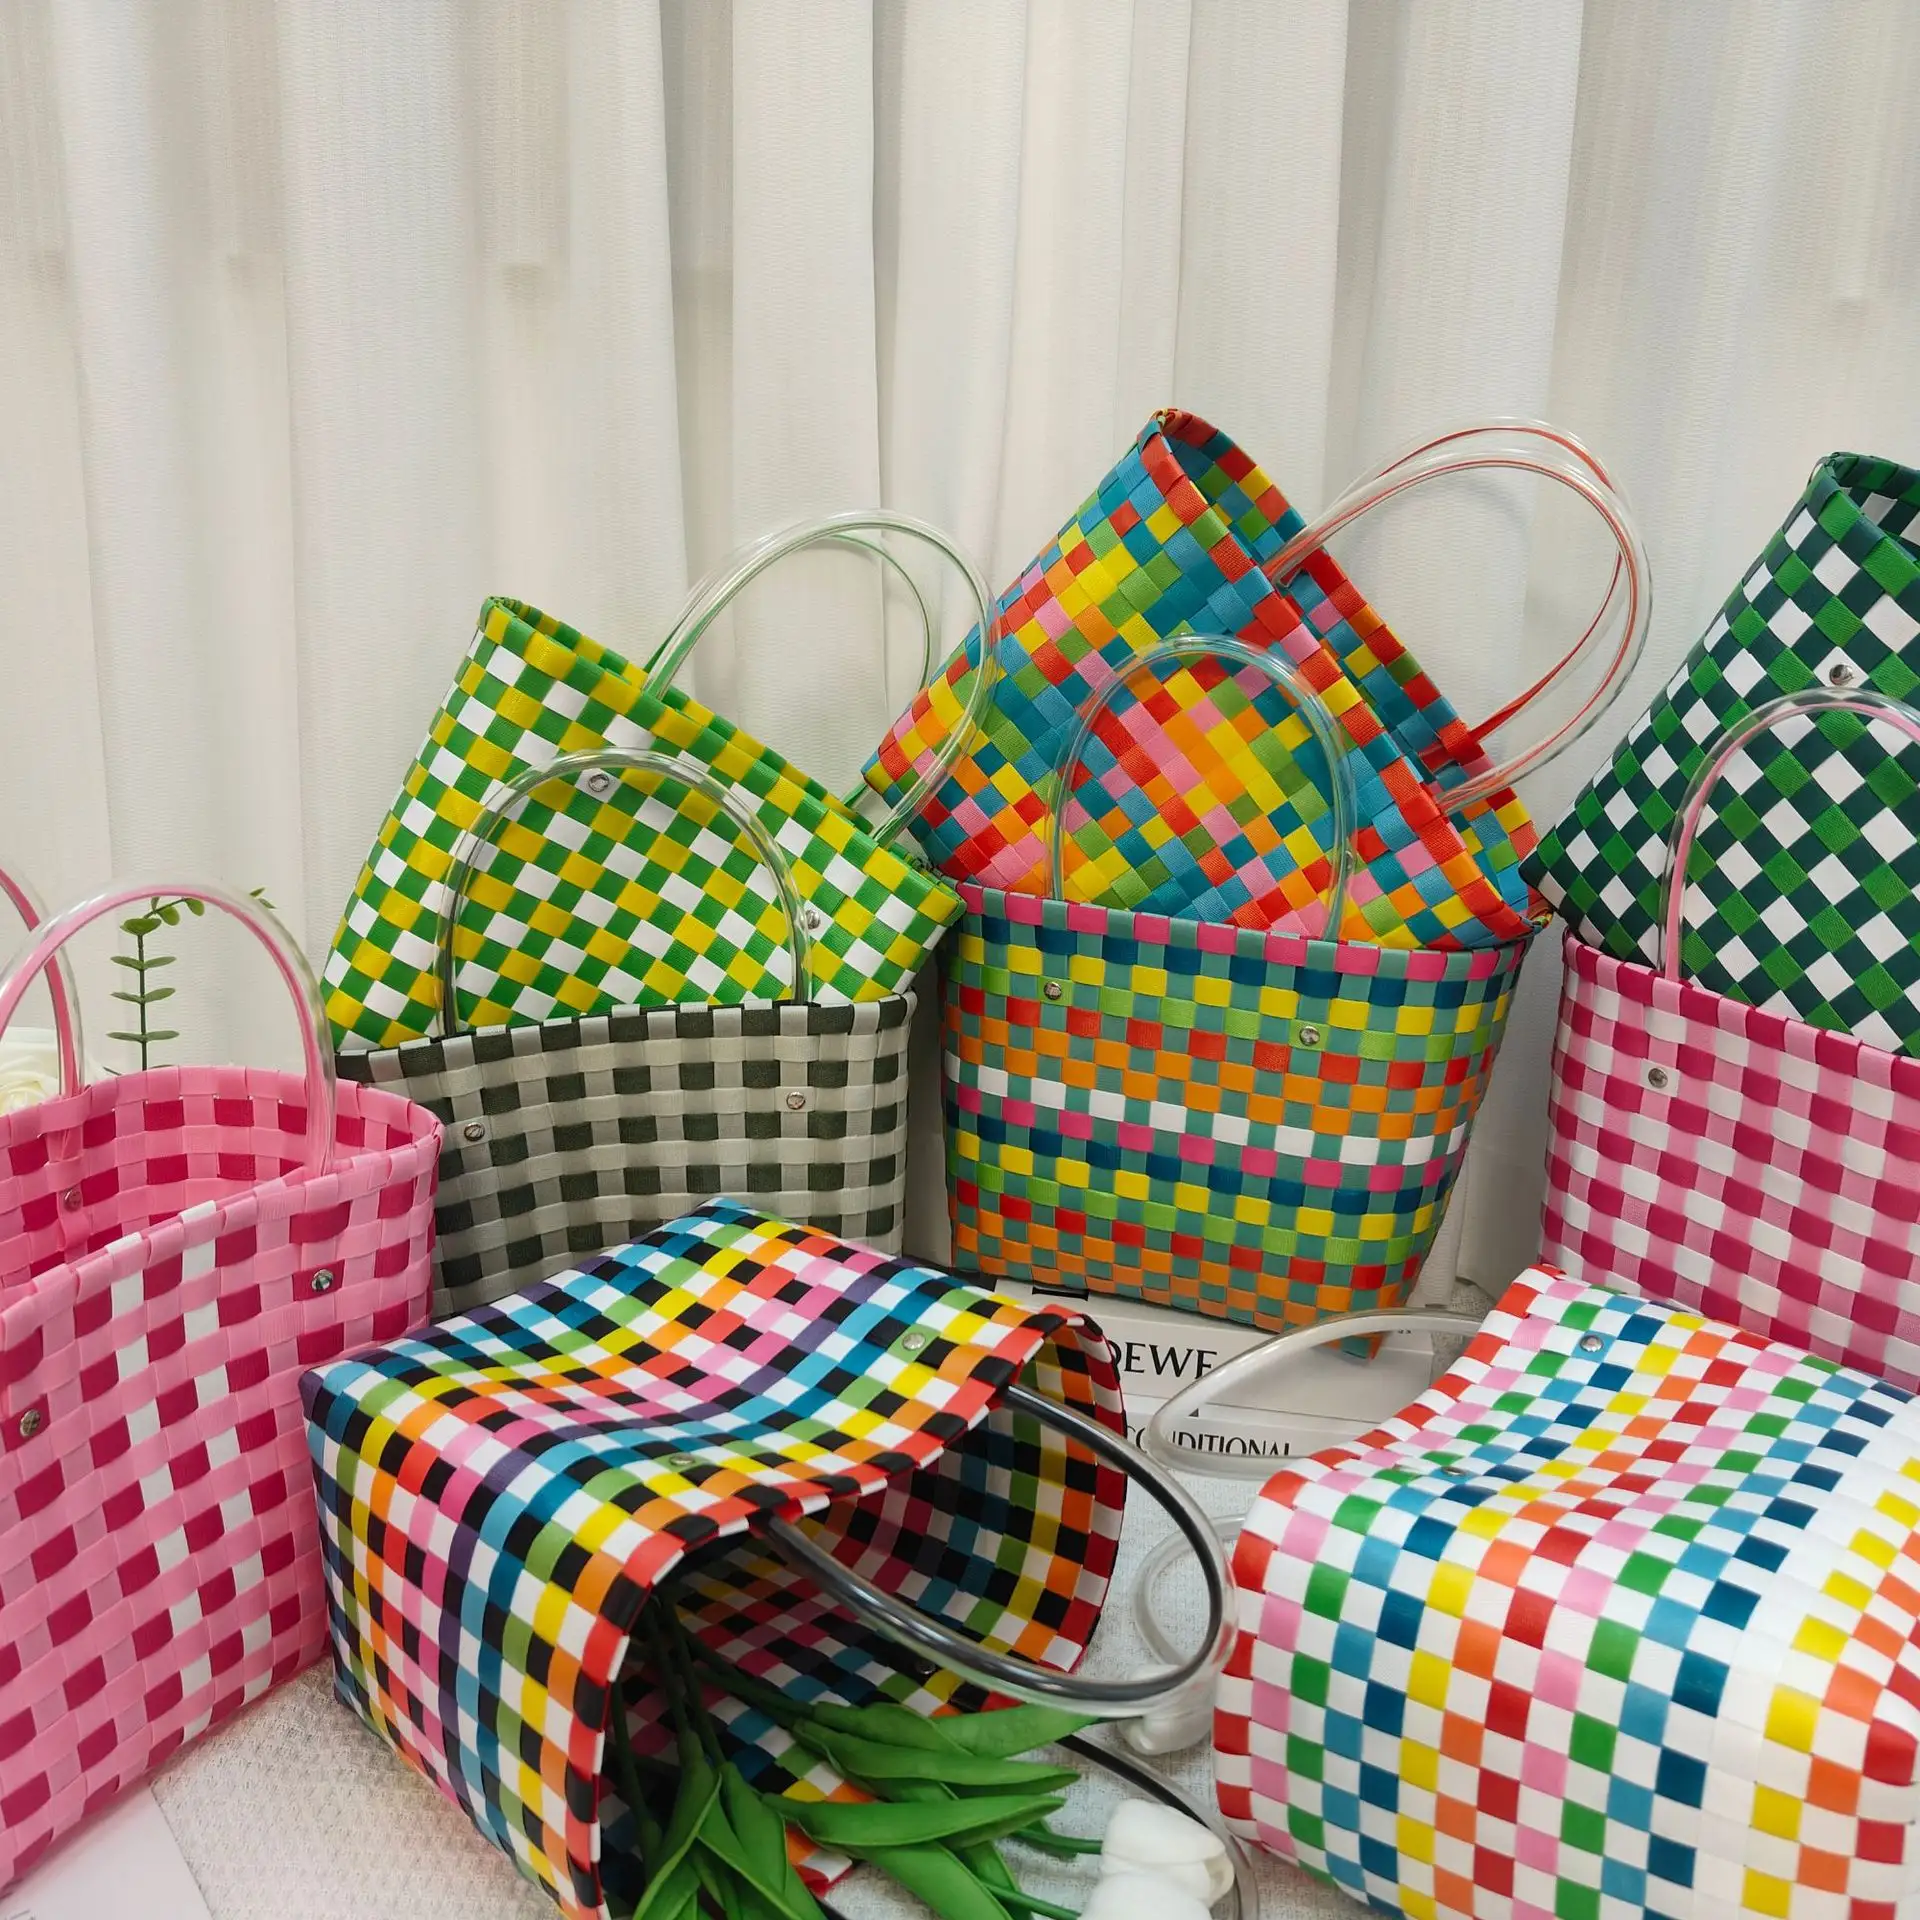 Nuevo bolso de playa colorido PP bolso tejido hecho a mano bolso de verano cesta de Picnic al aire libre para mujeres niñas